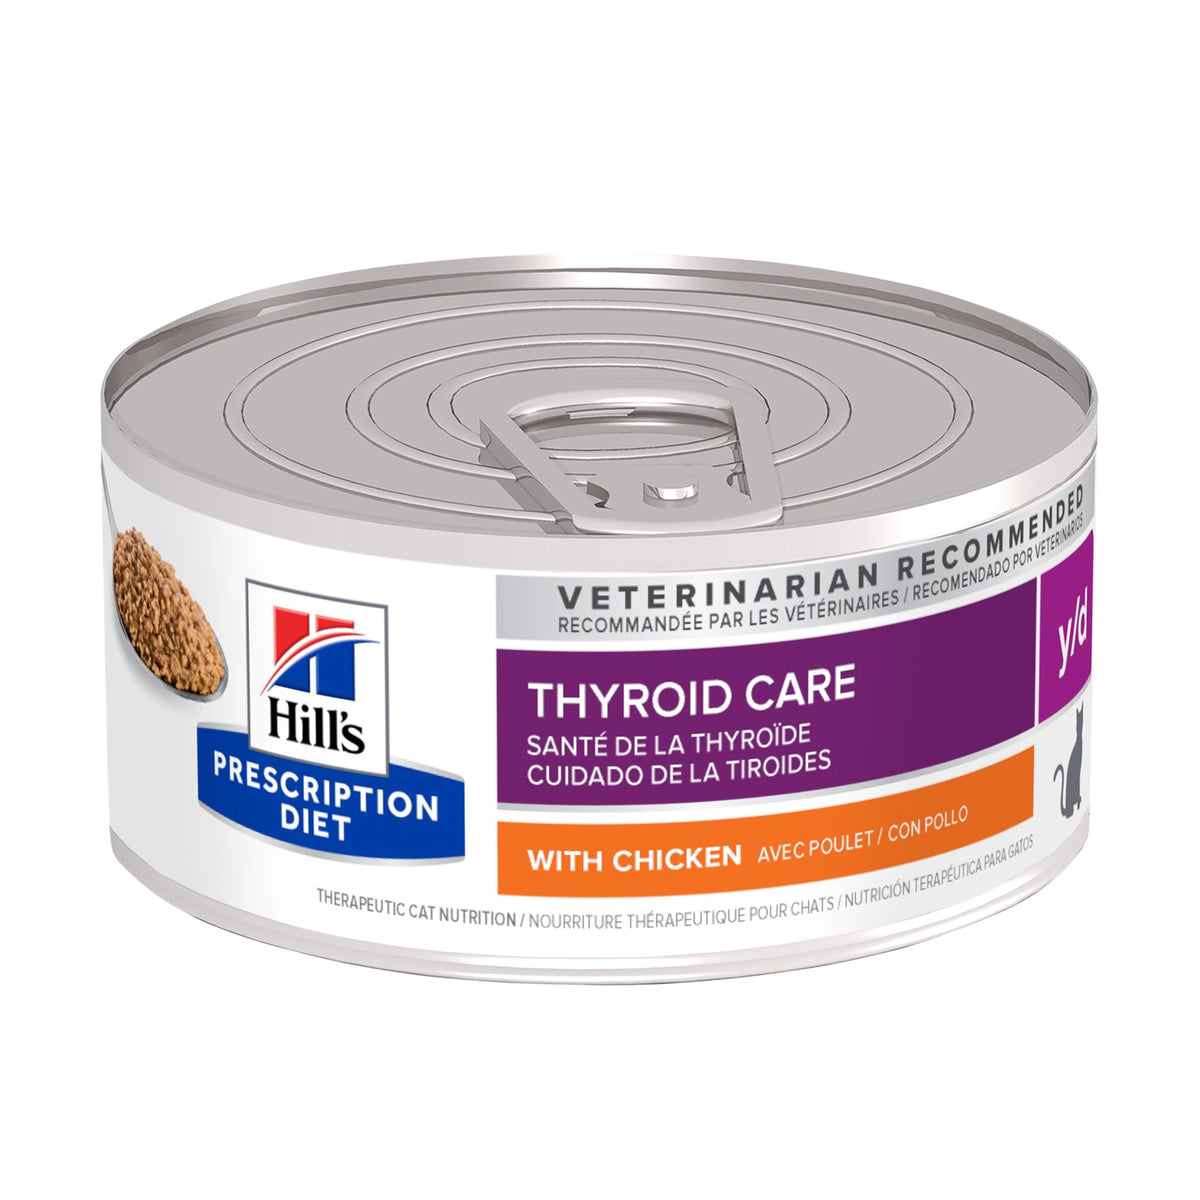 Hill's Prescription Diet Y/D Thyroid Care Cat Wet Food 156gm X 24 Cans